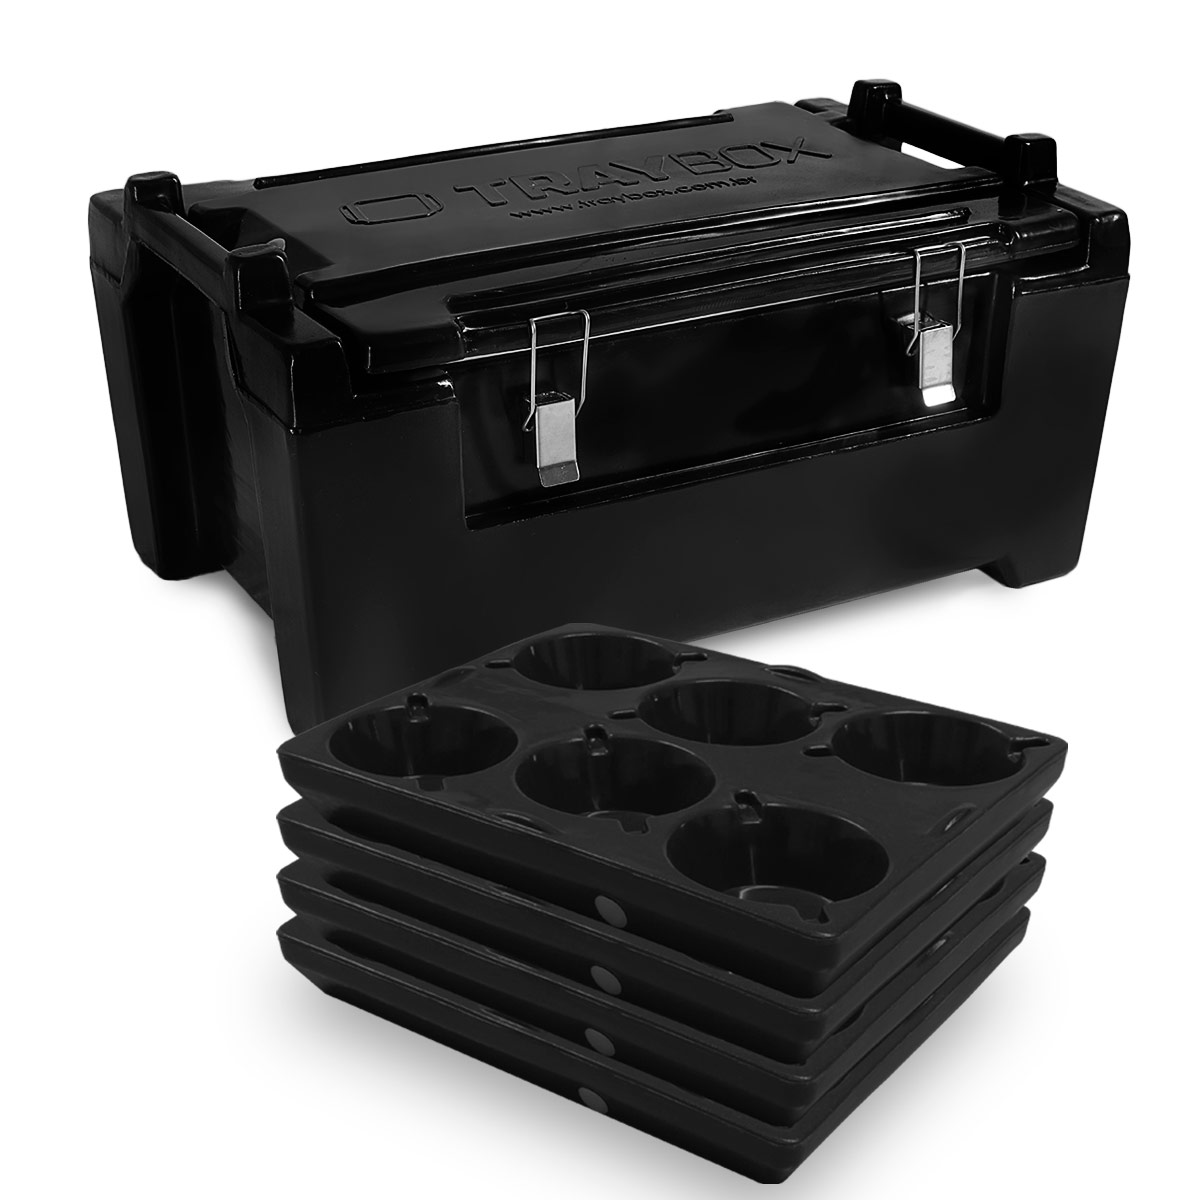 Kit Caixa Térmica Hot Box de 100 Litros + 4 Bandejas para até 24 marmitas